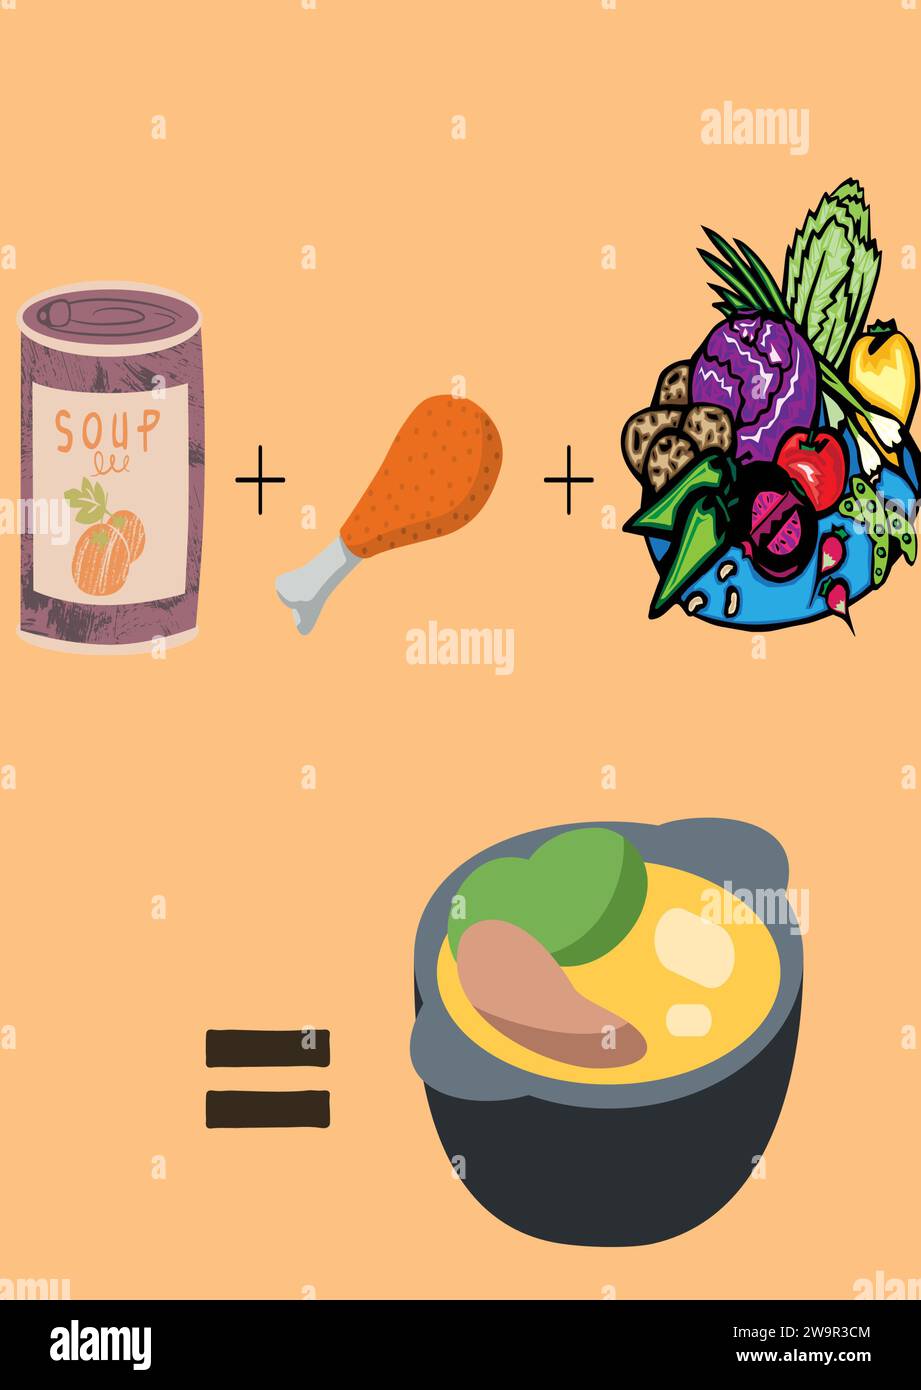 Un dessin simple montrant de la nourriture dans un bol. Un bol à soupe avec ses ingrédients ; poulet et légumes. Grignoter/manger sain montrant le bien-être. Illustration de Vecteur